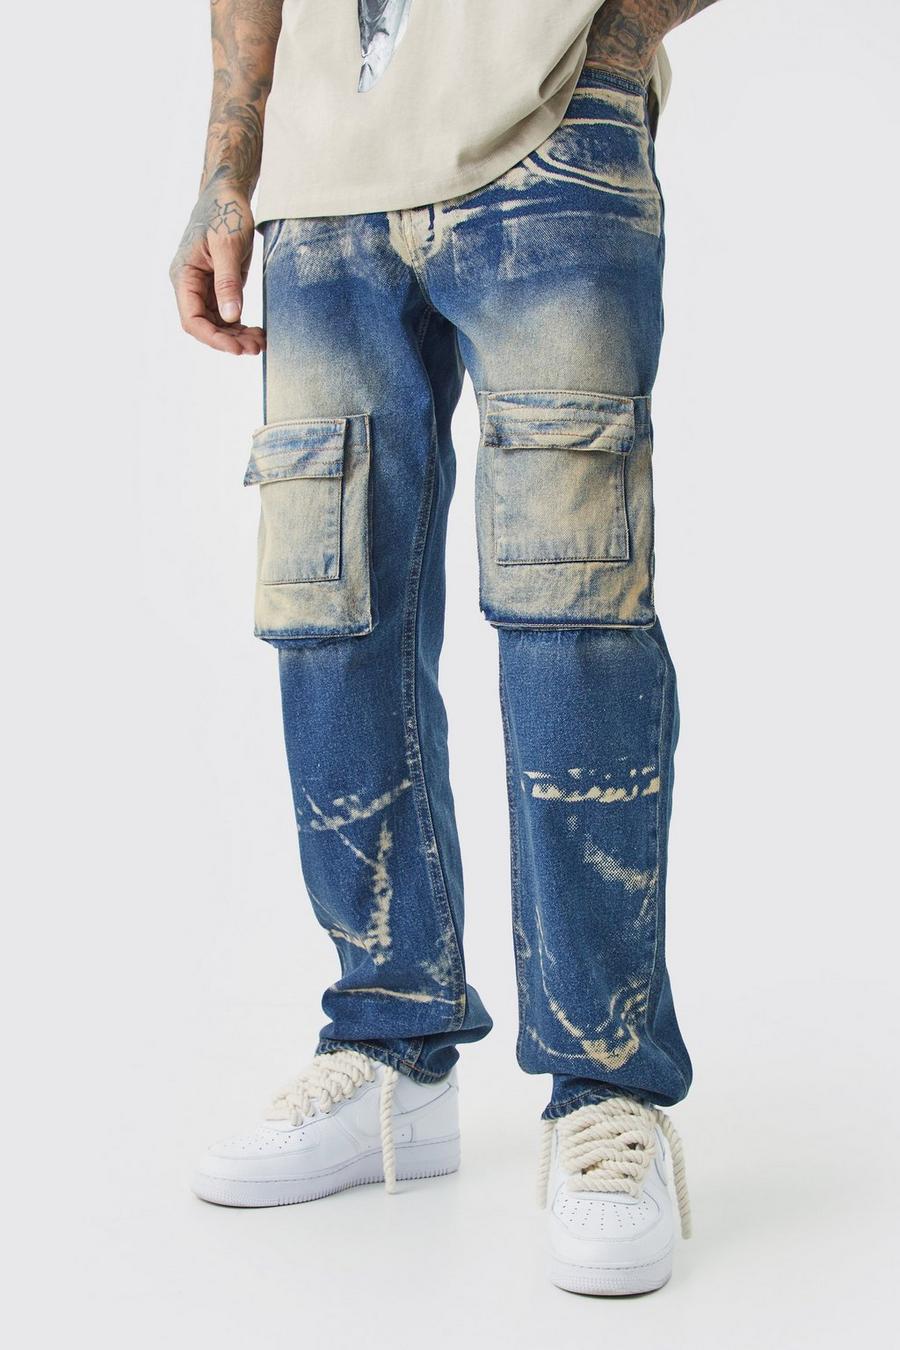 Jeans Tall rilassati in denim rigido con raggi X in lavaggio acido, Antique wash